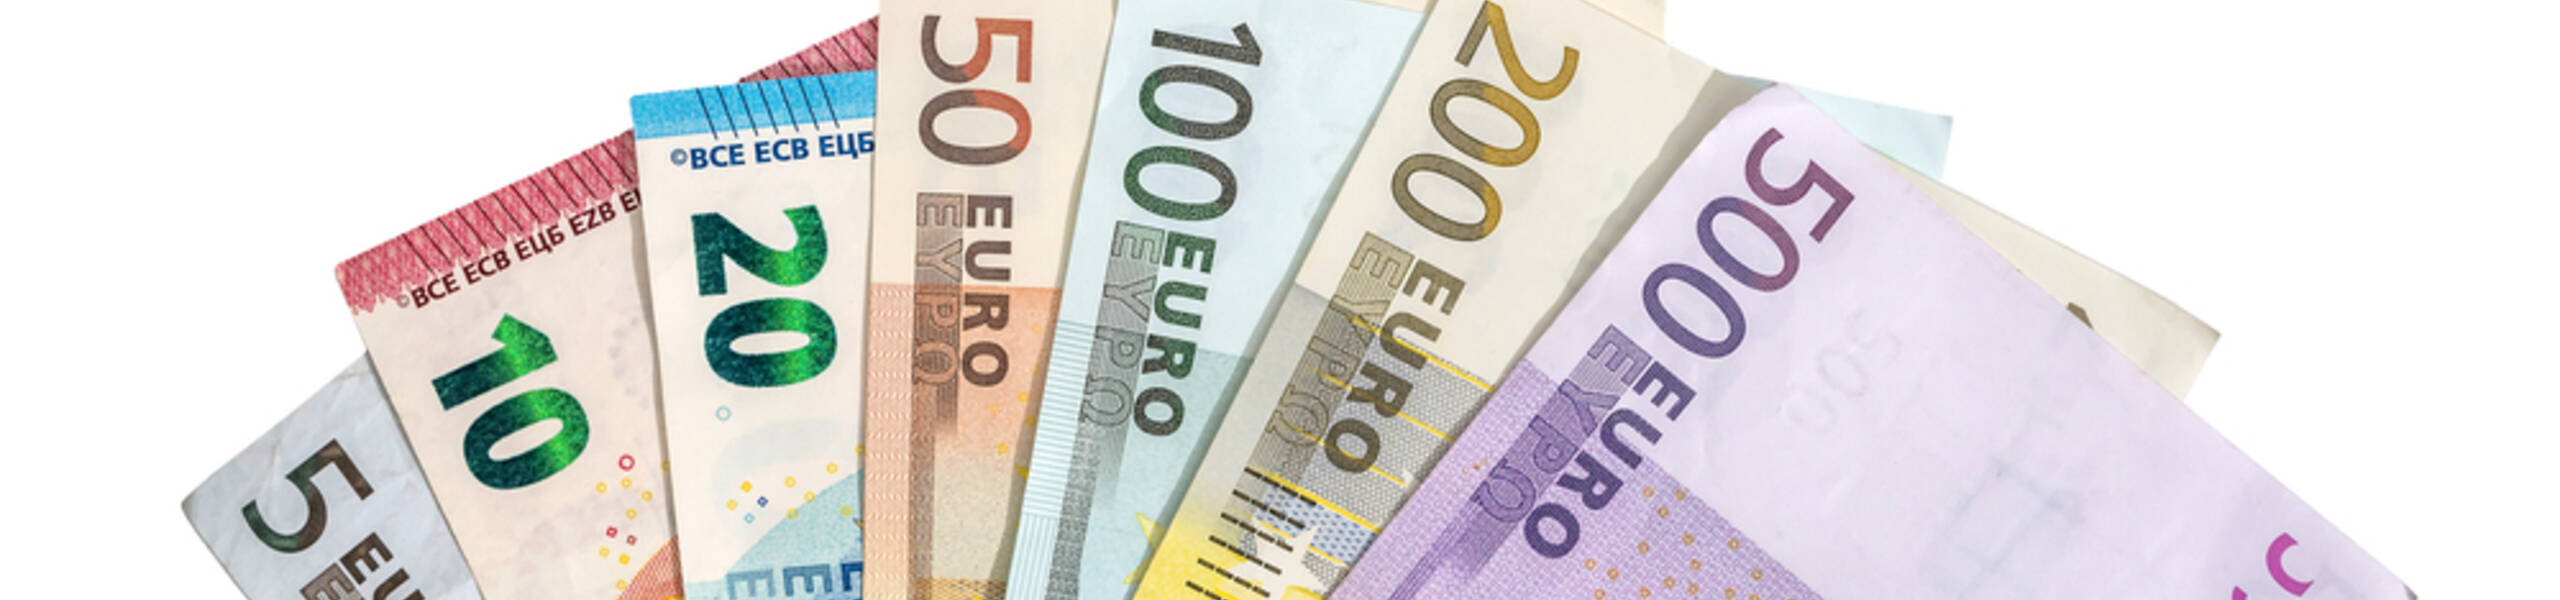 EUR / GBP: Par é visto sendo negociado em baixa de nove meses